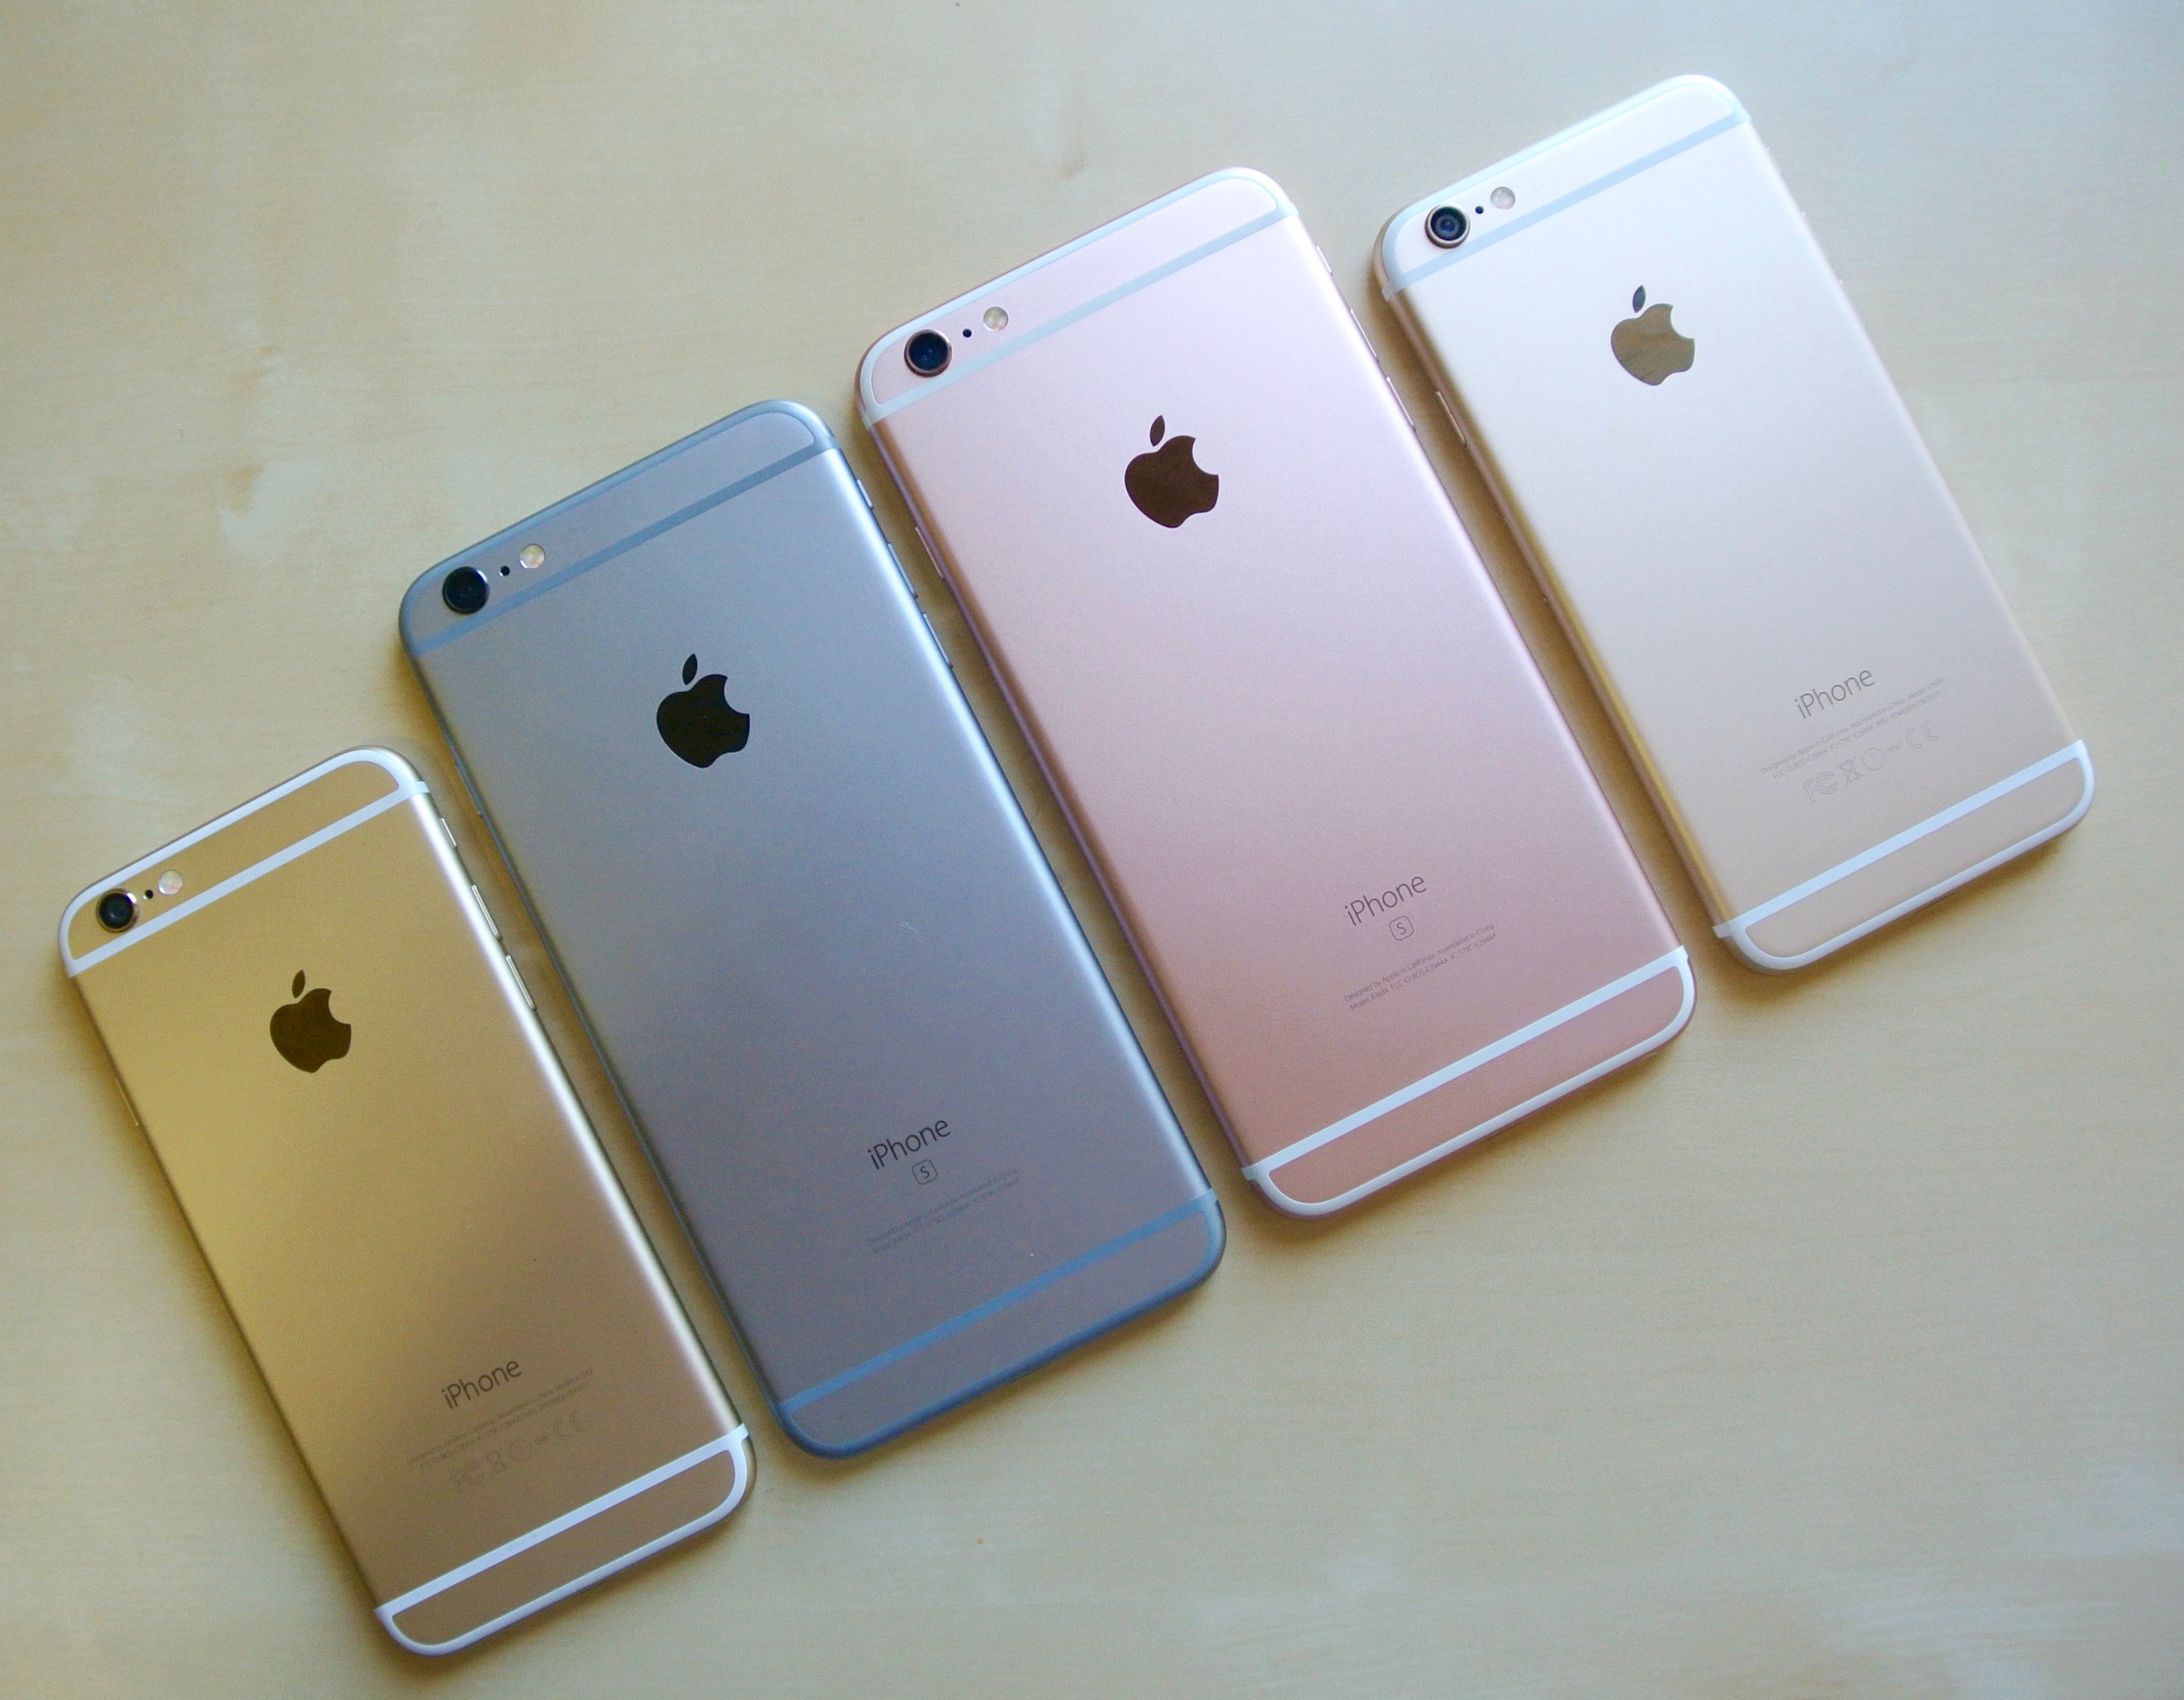 Айфон 6s какие. Iphone 6s. Iphone 6s Plus. Iphone 6s цвета. Айфон 6s цвета корпуса.